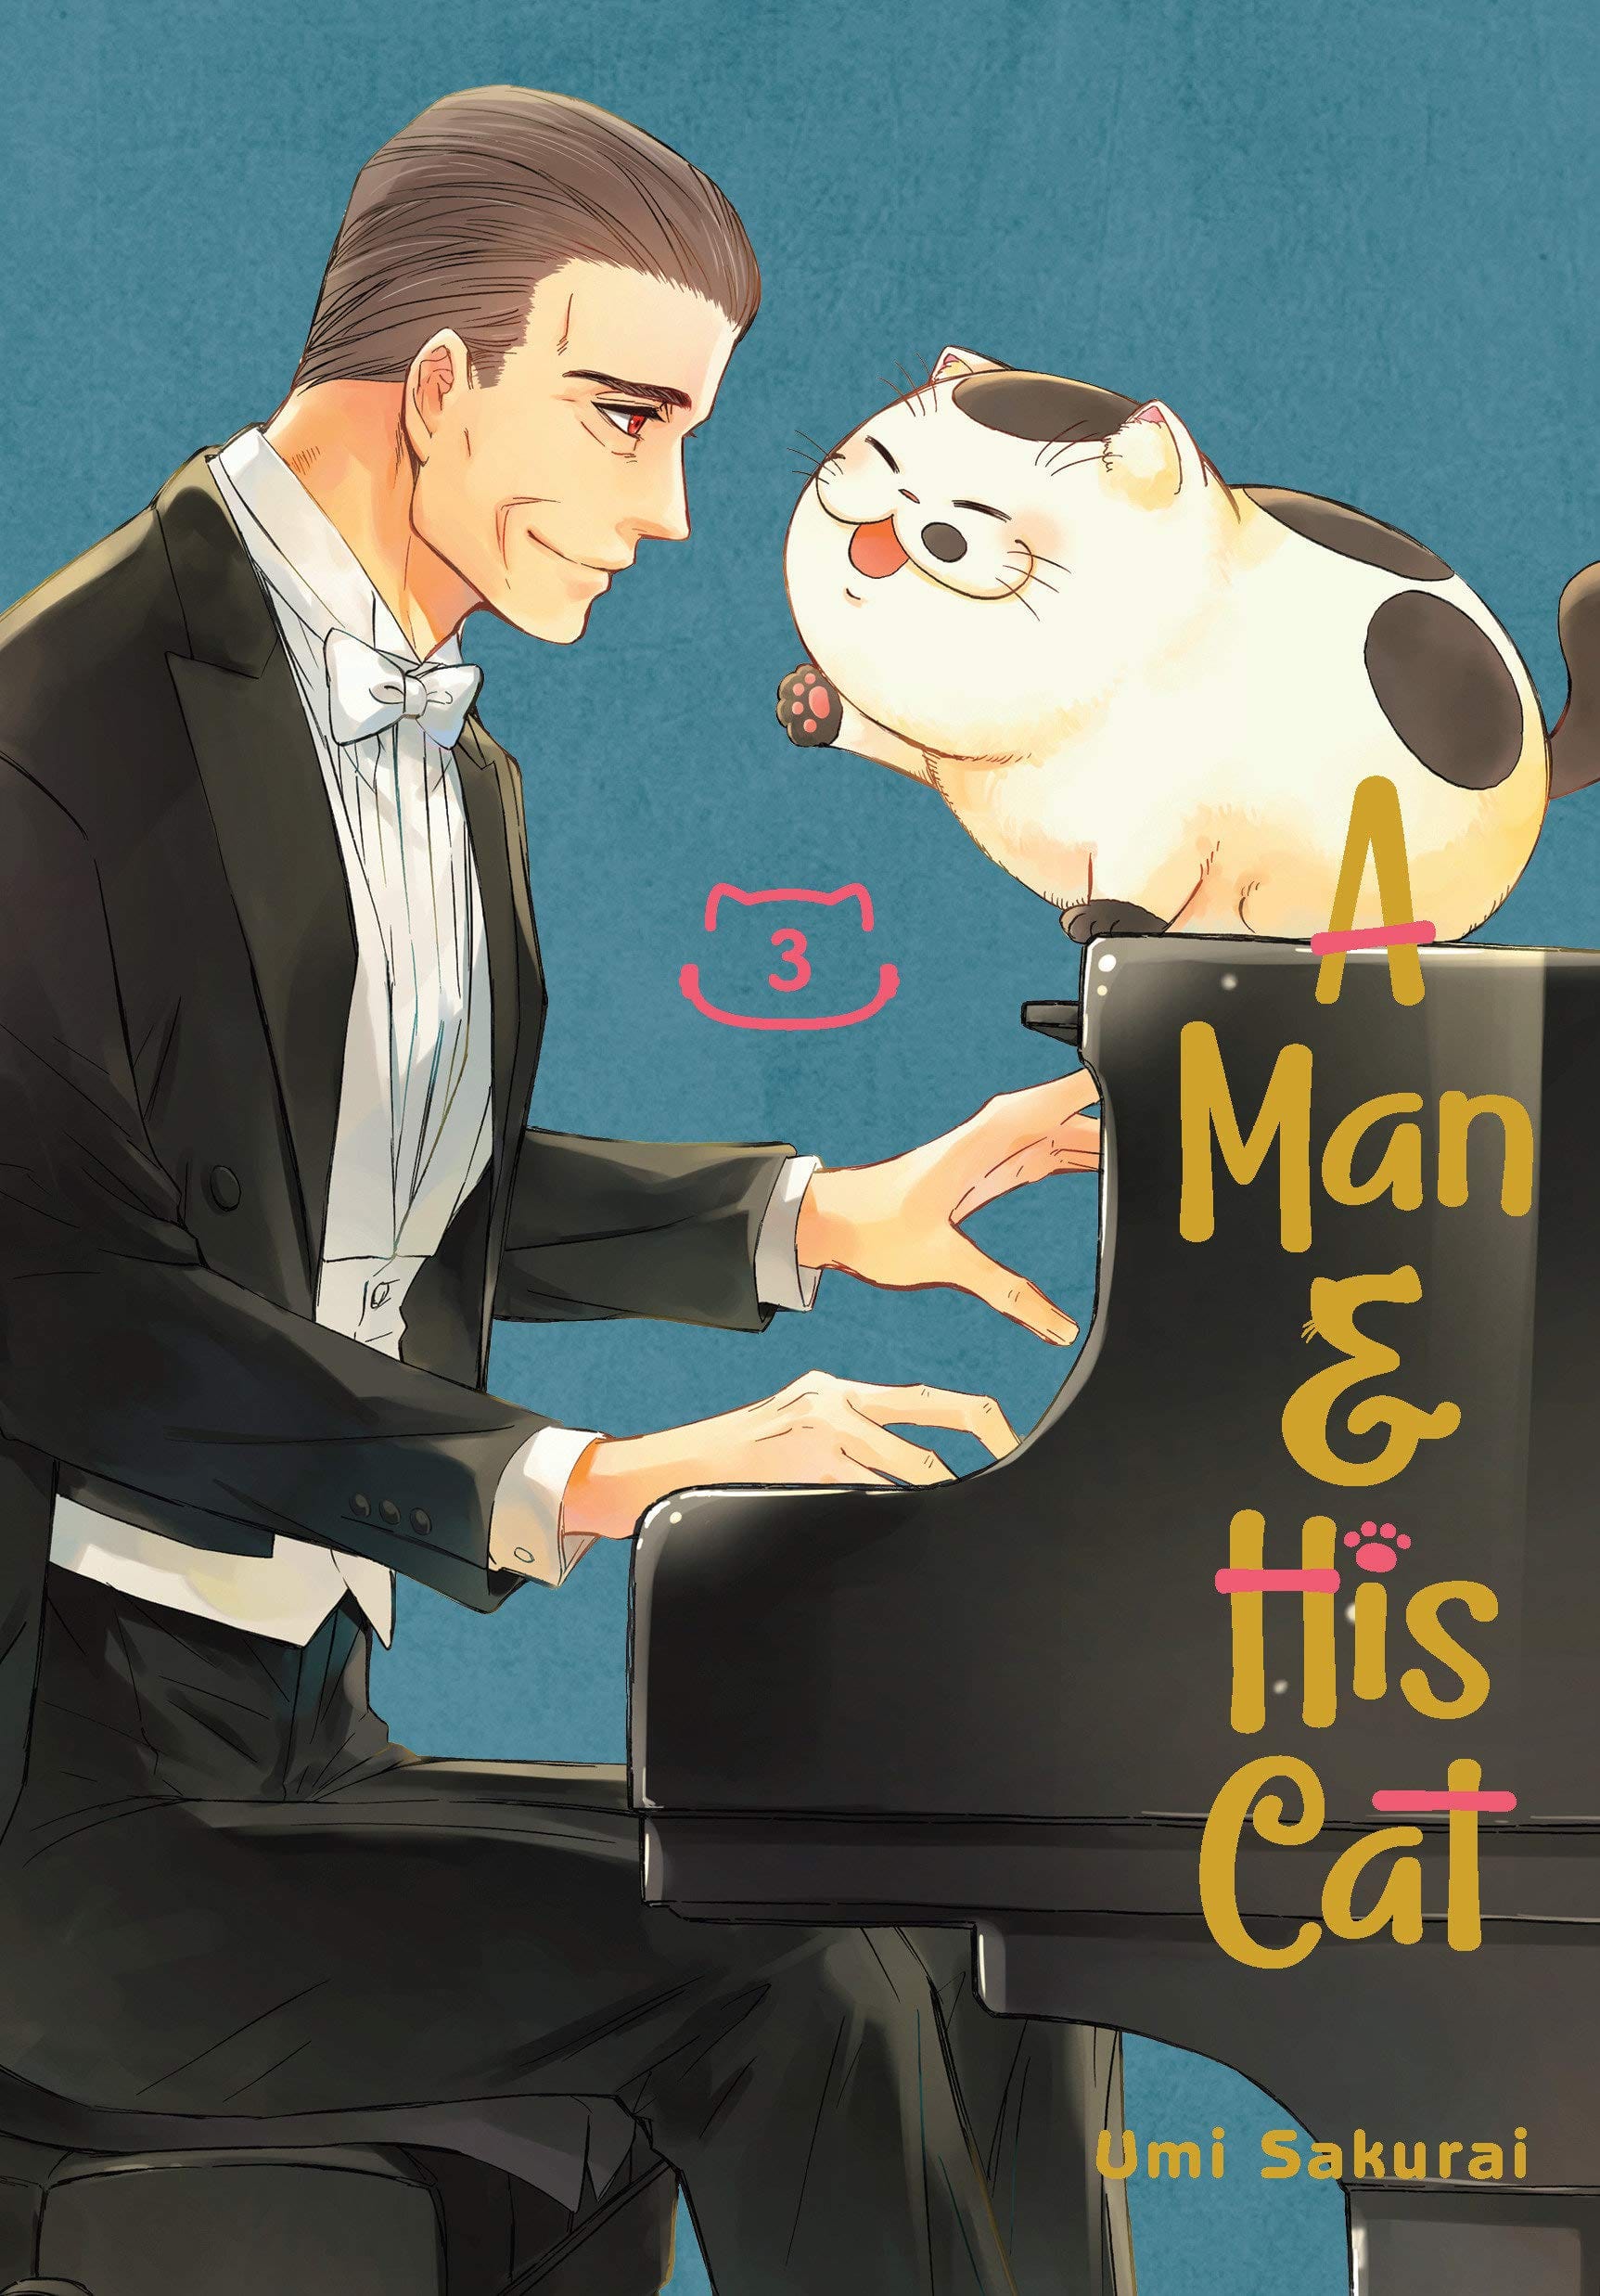 Man & His Cat Vol. 3 - Third Eye